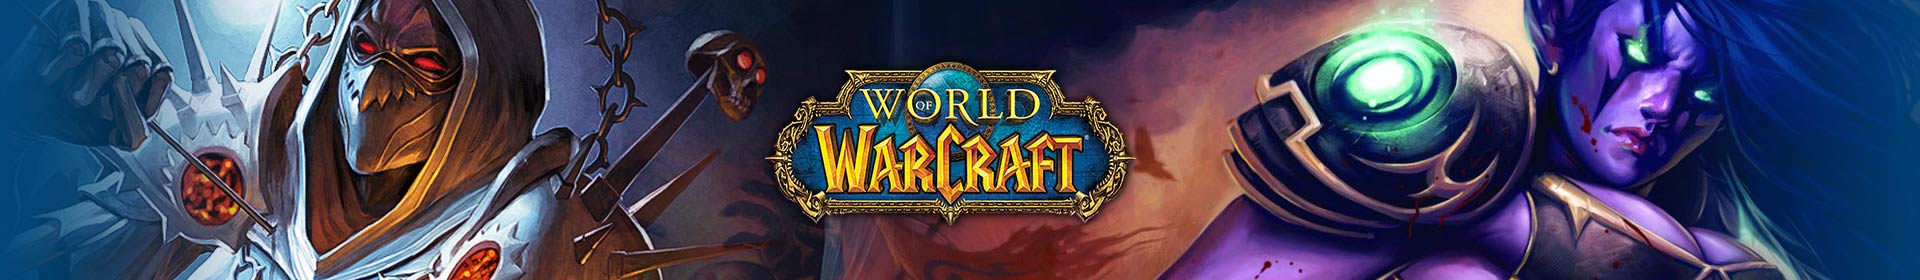 World of Warcraft Gold EU